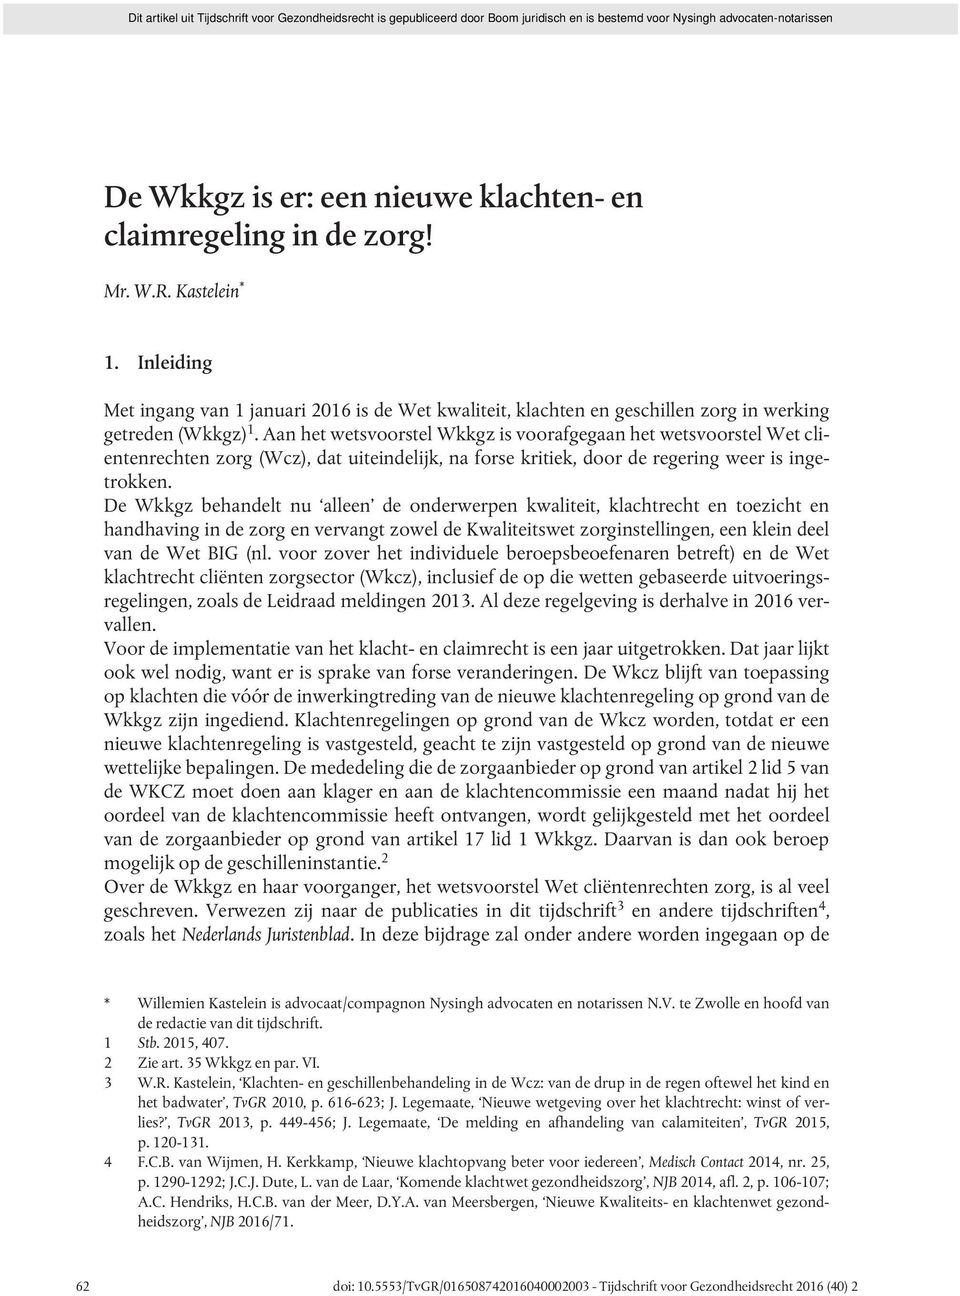 Aan het wetsvoorstel Wkkgz is voorafgegaan het wetsvoorstel Wet clientenrechten zorg (Wcz), dat uiteindelijk, na forse kritiek, door de regering weer is ingetrokken.